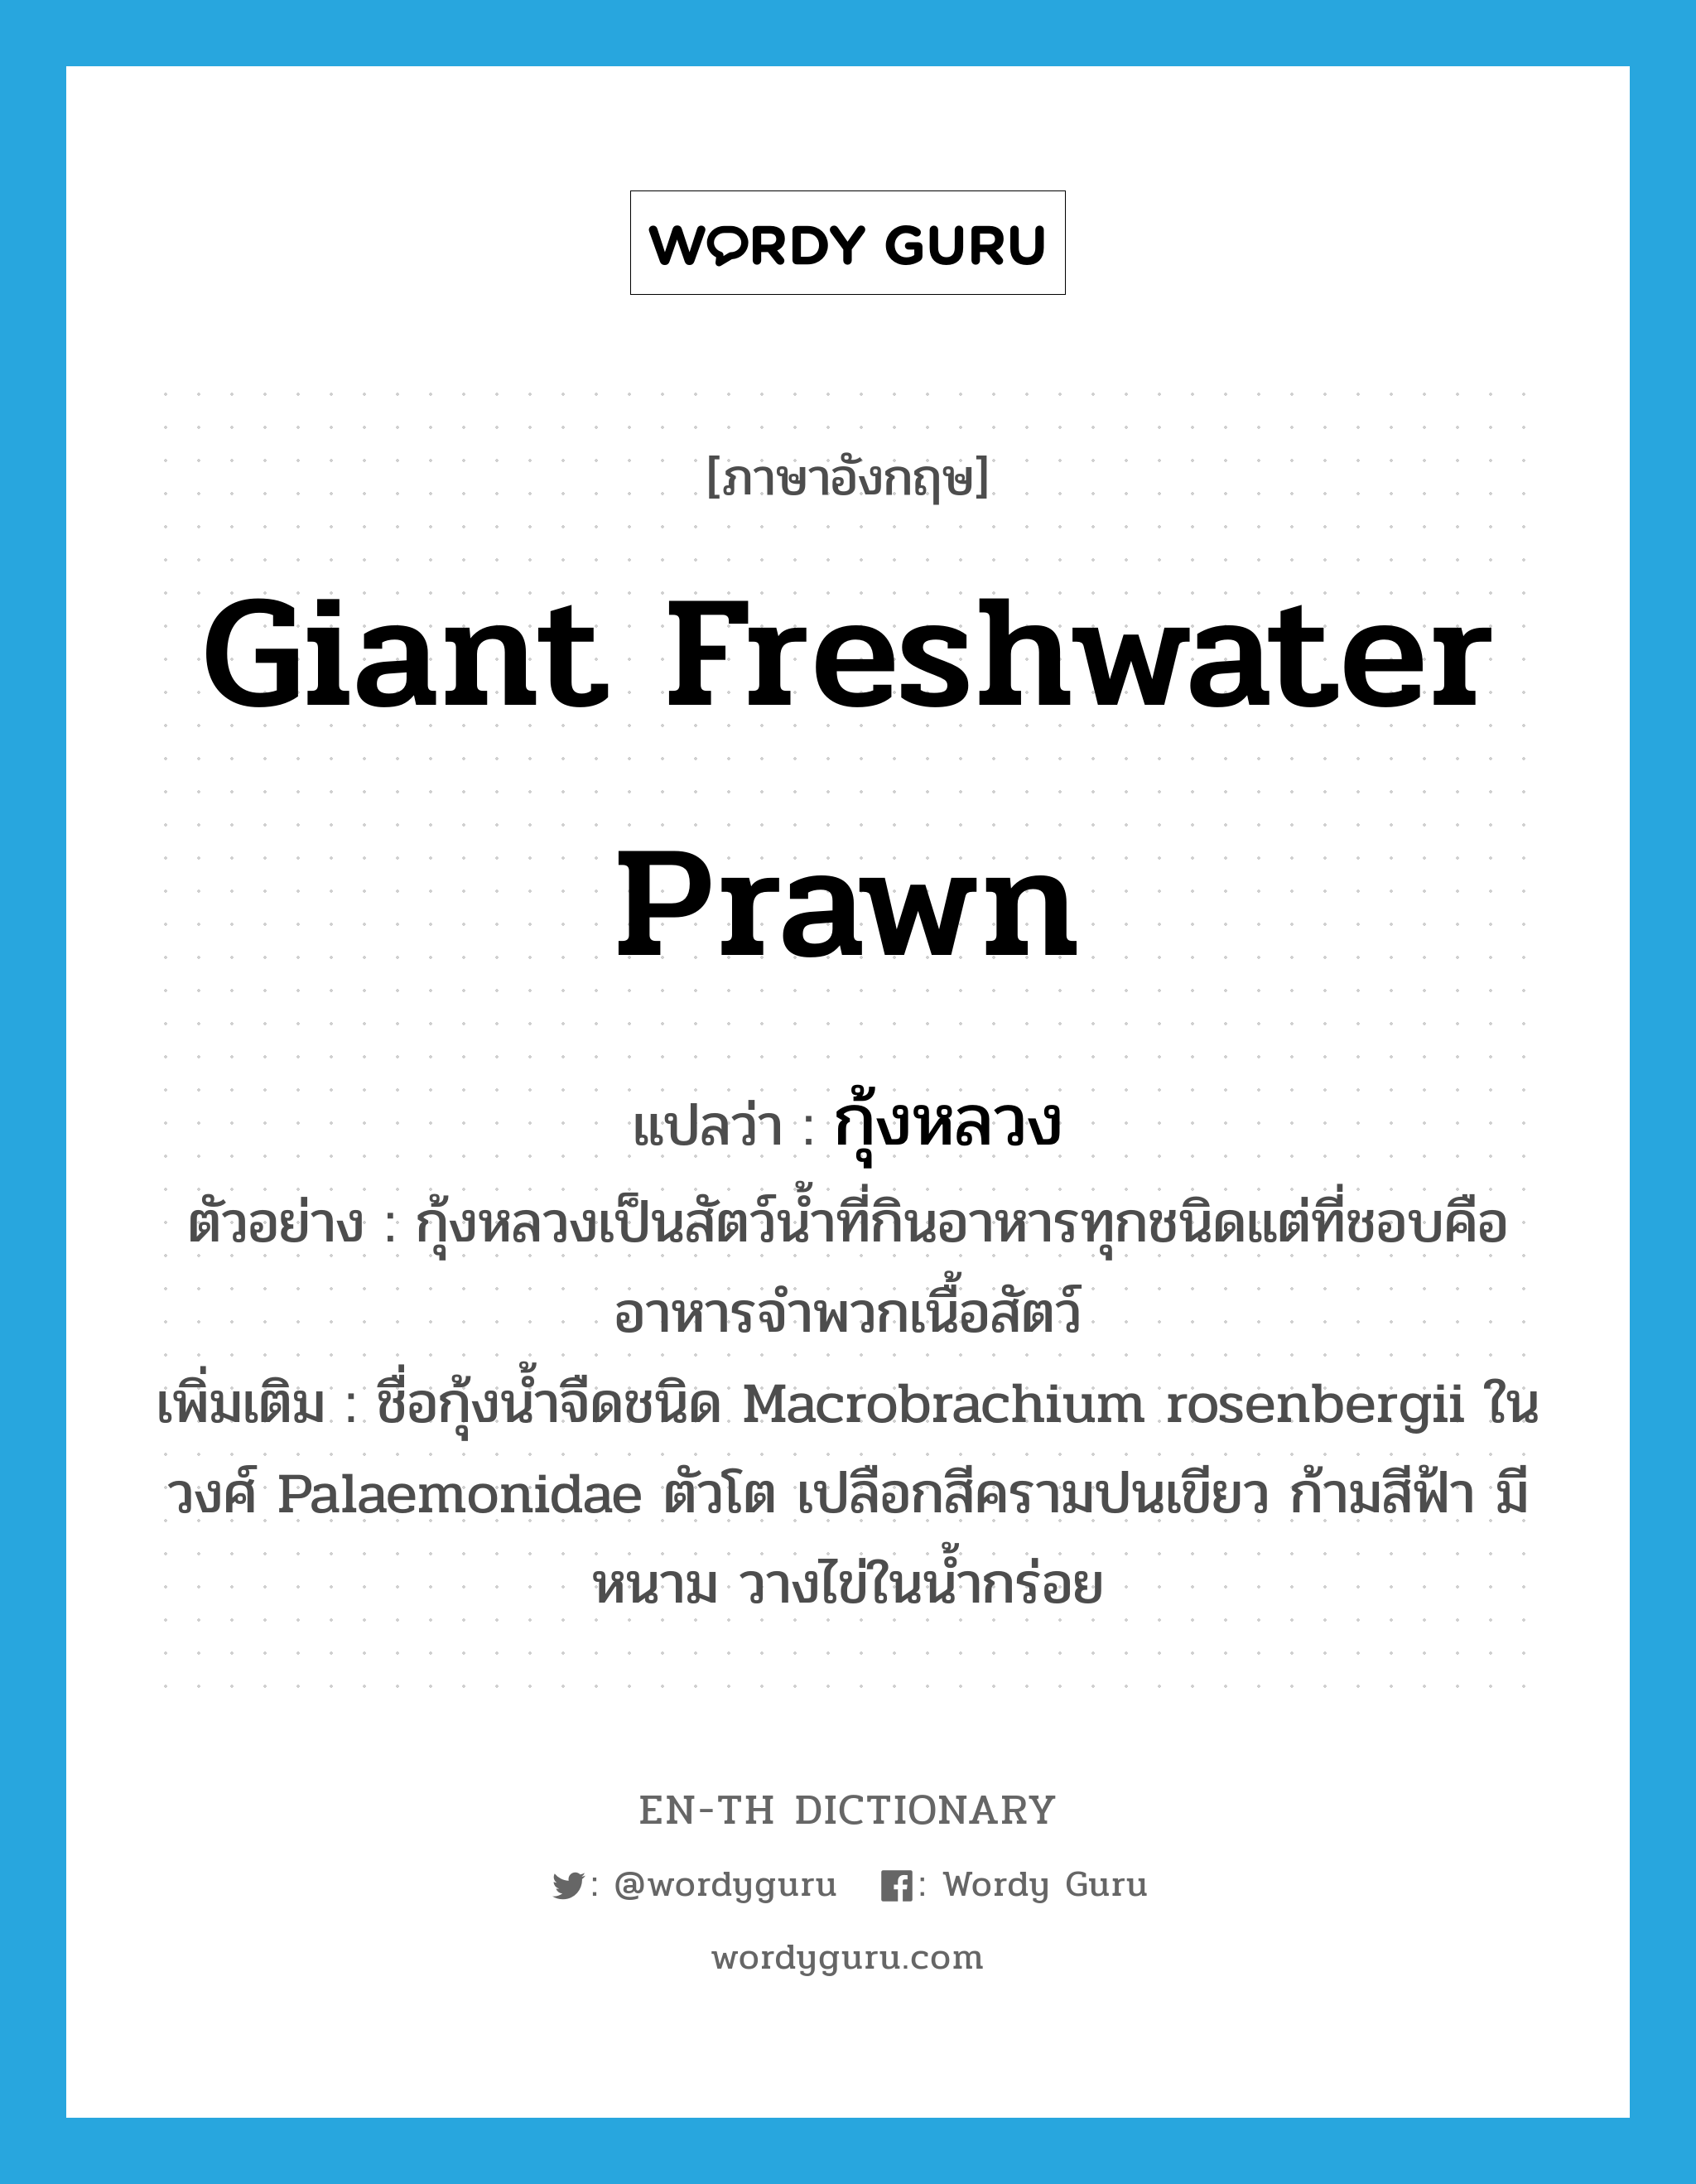 กุ้งหลวง ภาษาอังกฤษ?, คำศัพท์ภาษาอังกฤษ กุ้งหลวง แปลว่า giant freshwater prawn ประเภท N ตัวอย่าง กุ้งหลวงเป็นสัตว์น้ำที่กินอาหารทุกชนิดแต่ที่ชอบคือ อาหารจำพวกเนื้อสัตว์ เพิ่มเติม ชื่อกุ้งน้ำจืดชนิด Macrobrachium rosenbergii ในวงศ์ Palaemonidae ตัวโต เปลือกสีครามปนเขียว ก้ามสีฟ้า มีหนาม วางไข่ในน้ำกร่อย หมวด N